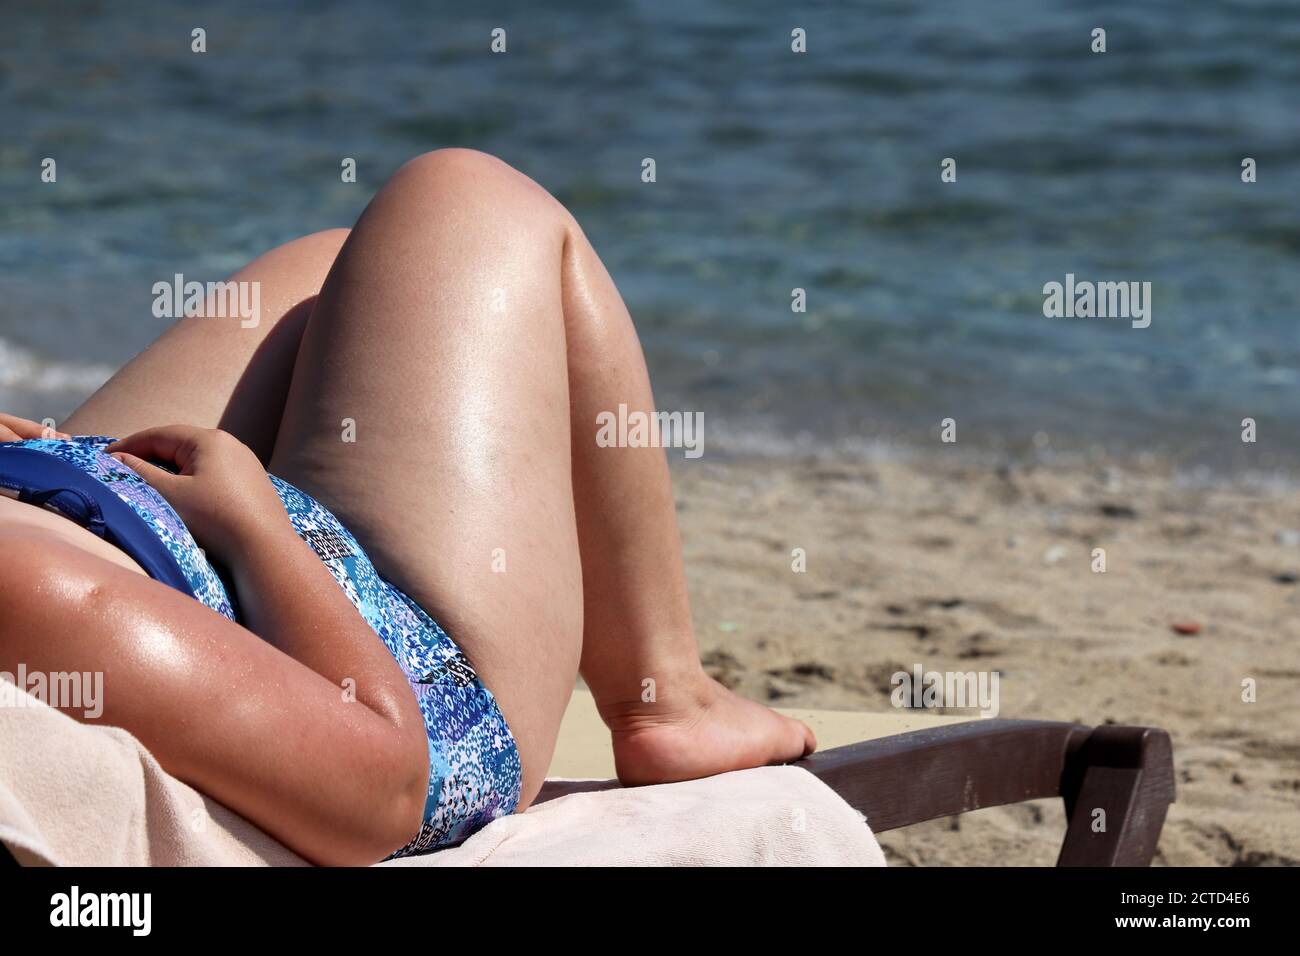 Femme grasse bronzant sur une plage sur fond de vagues de mer. Surpoids et obésité concept Banque D'Images